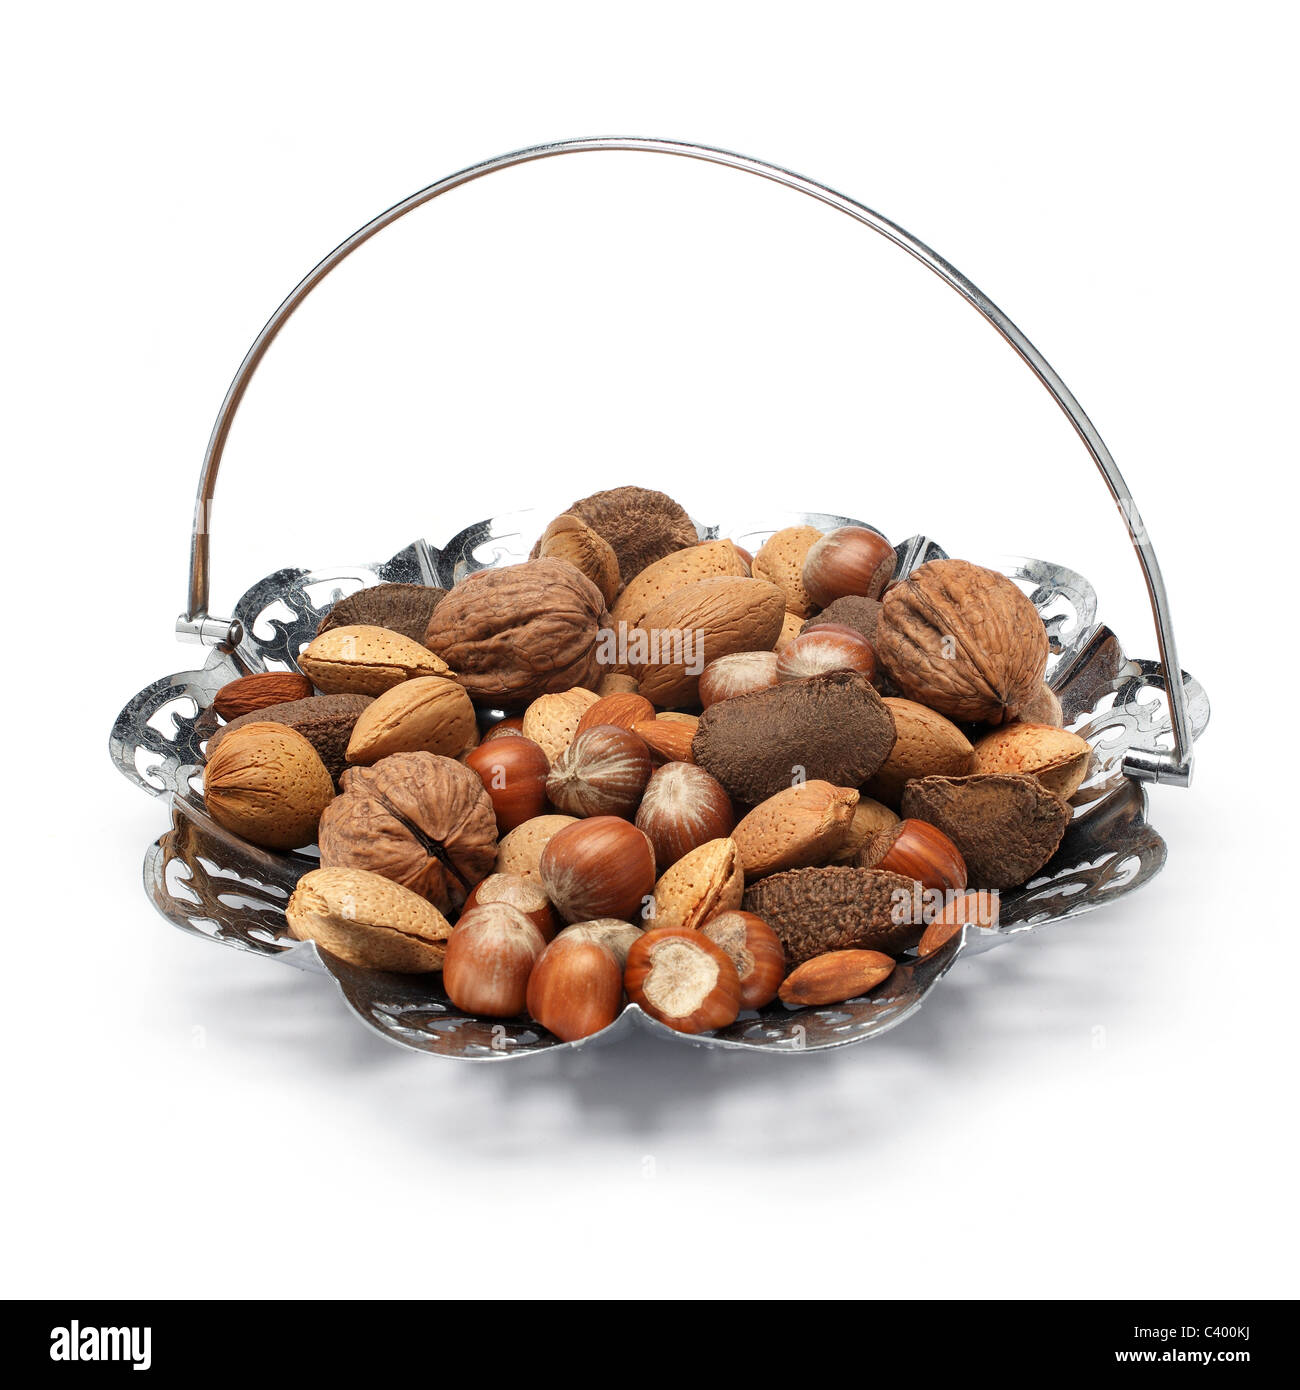 mixed nuts Stock Photo